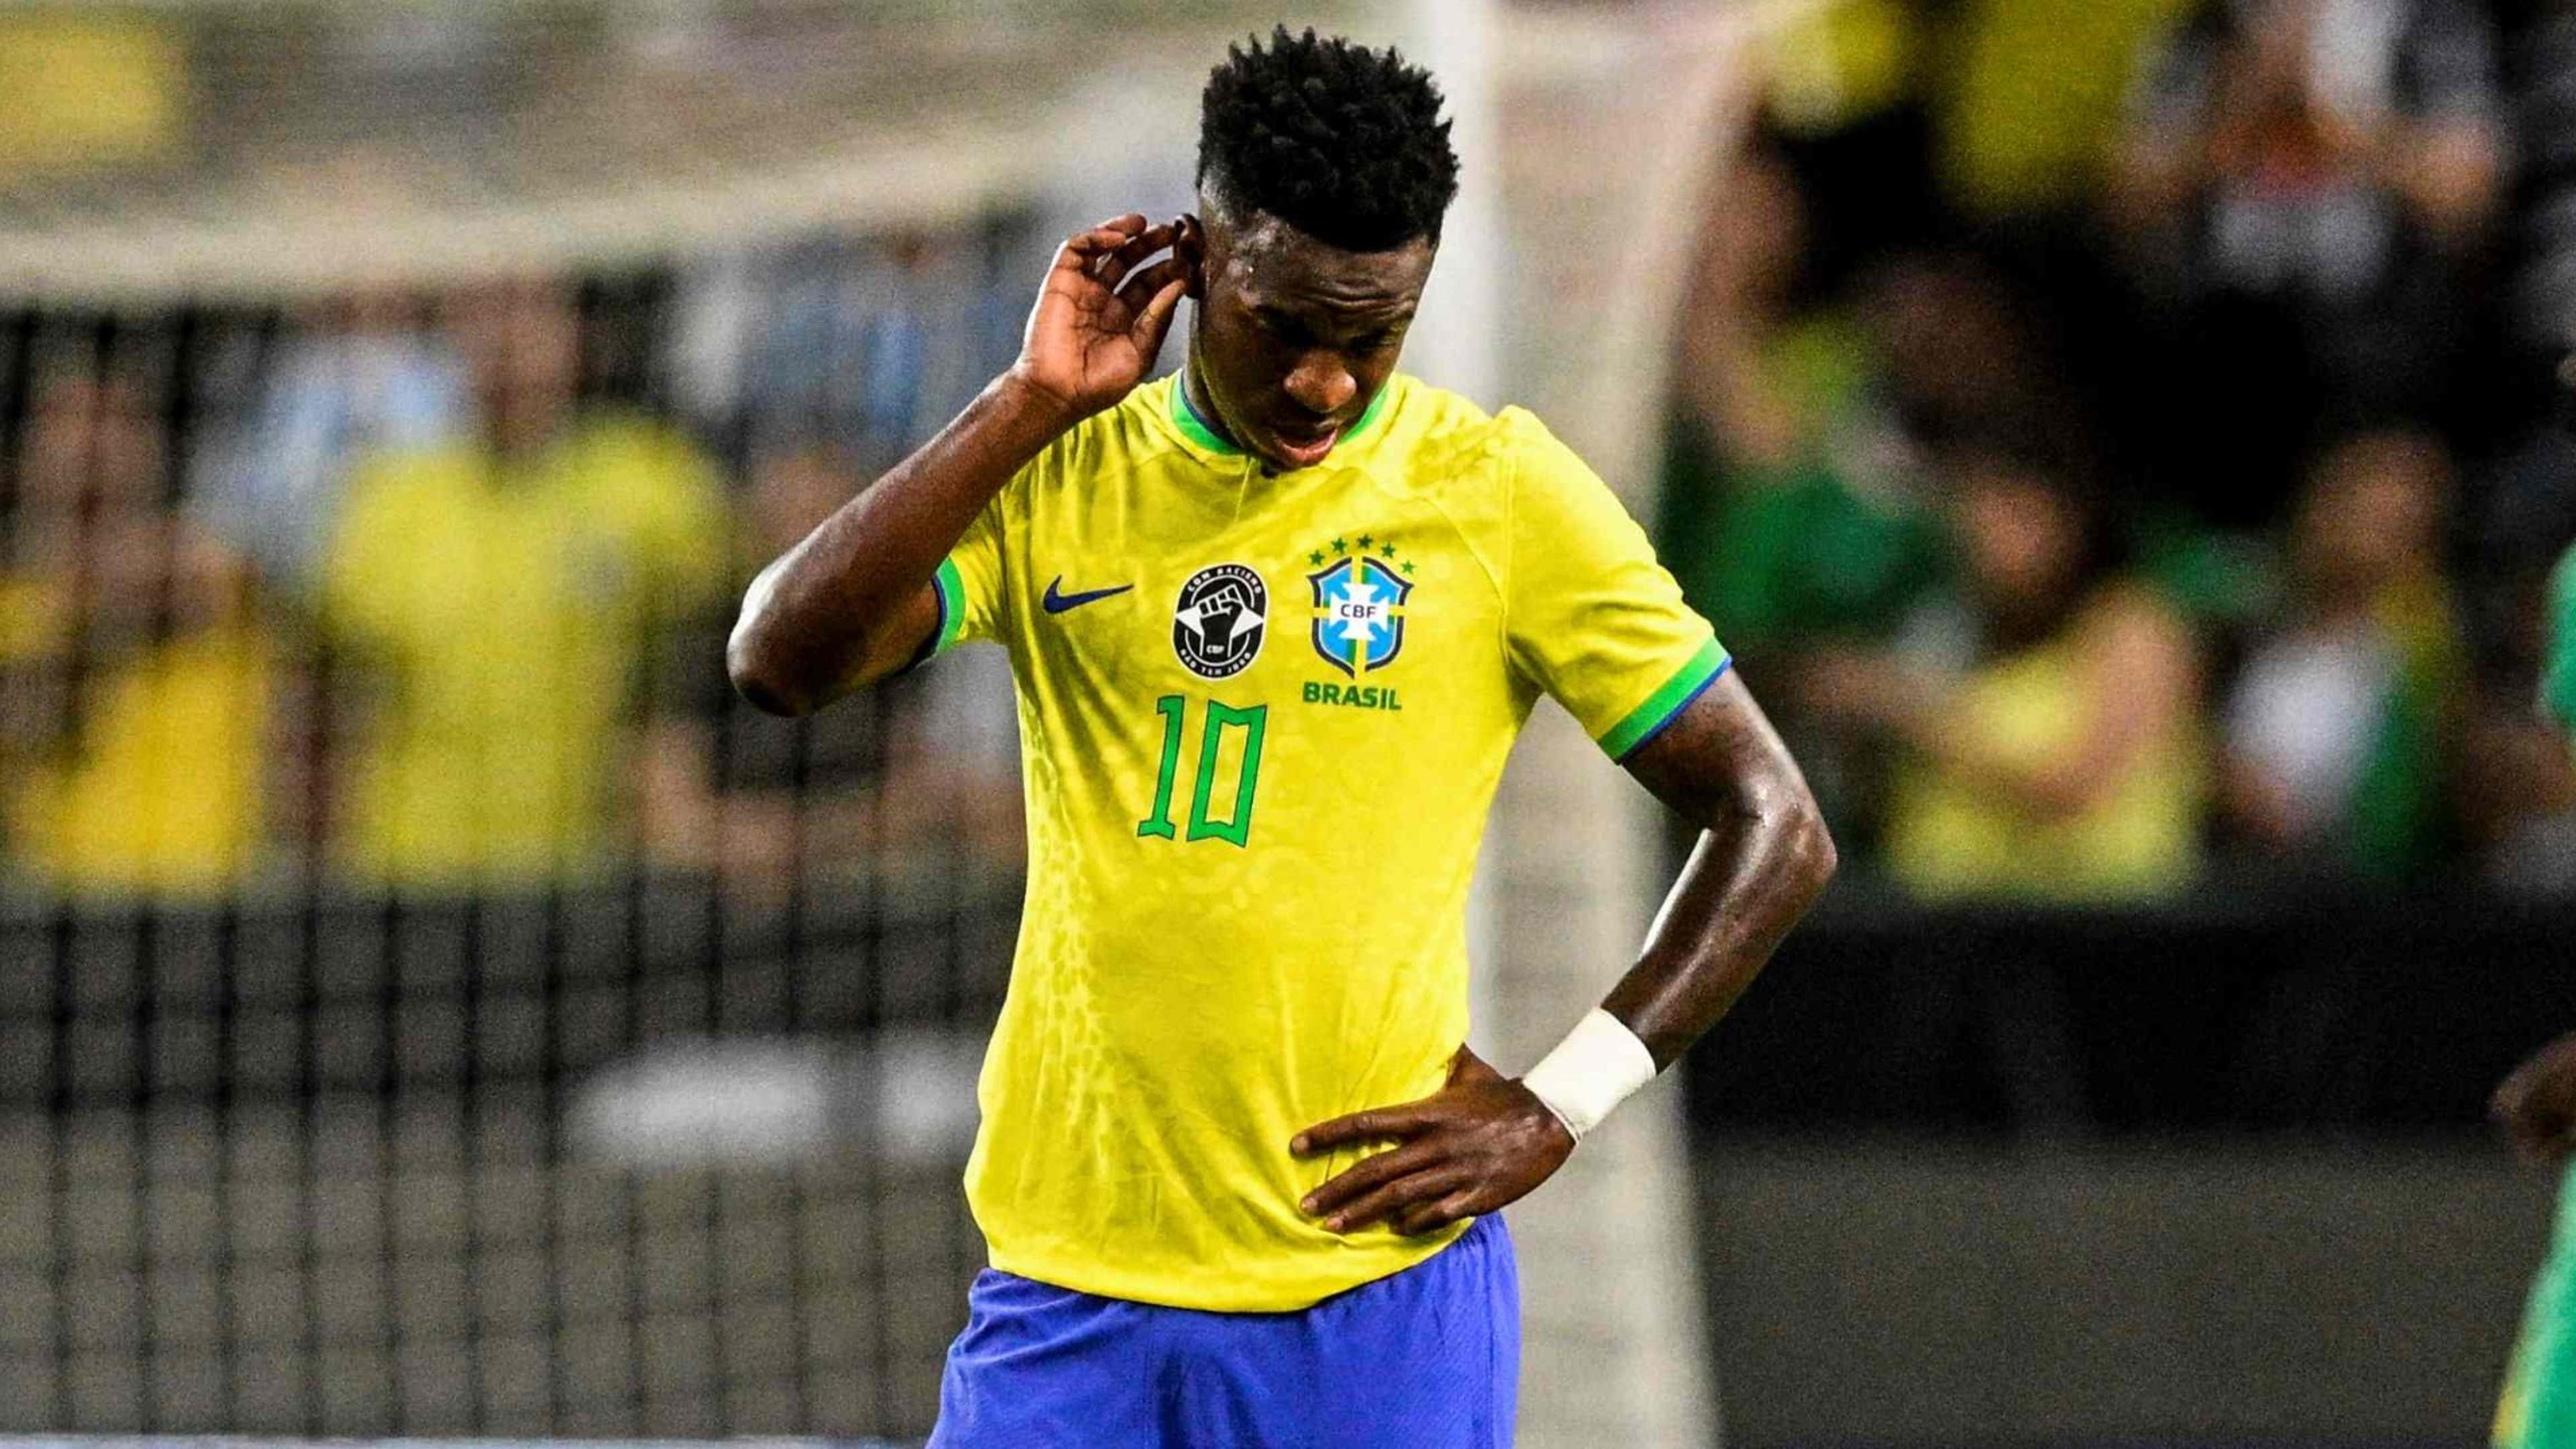 Por que o Brasil joga de camisa preta o amistoso contra Guiné?